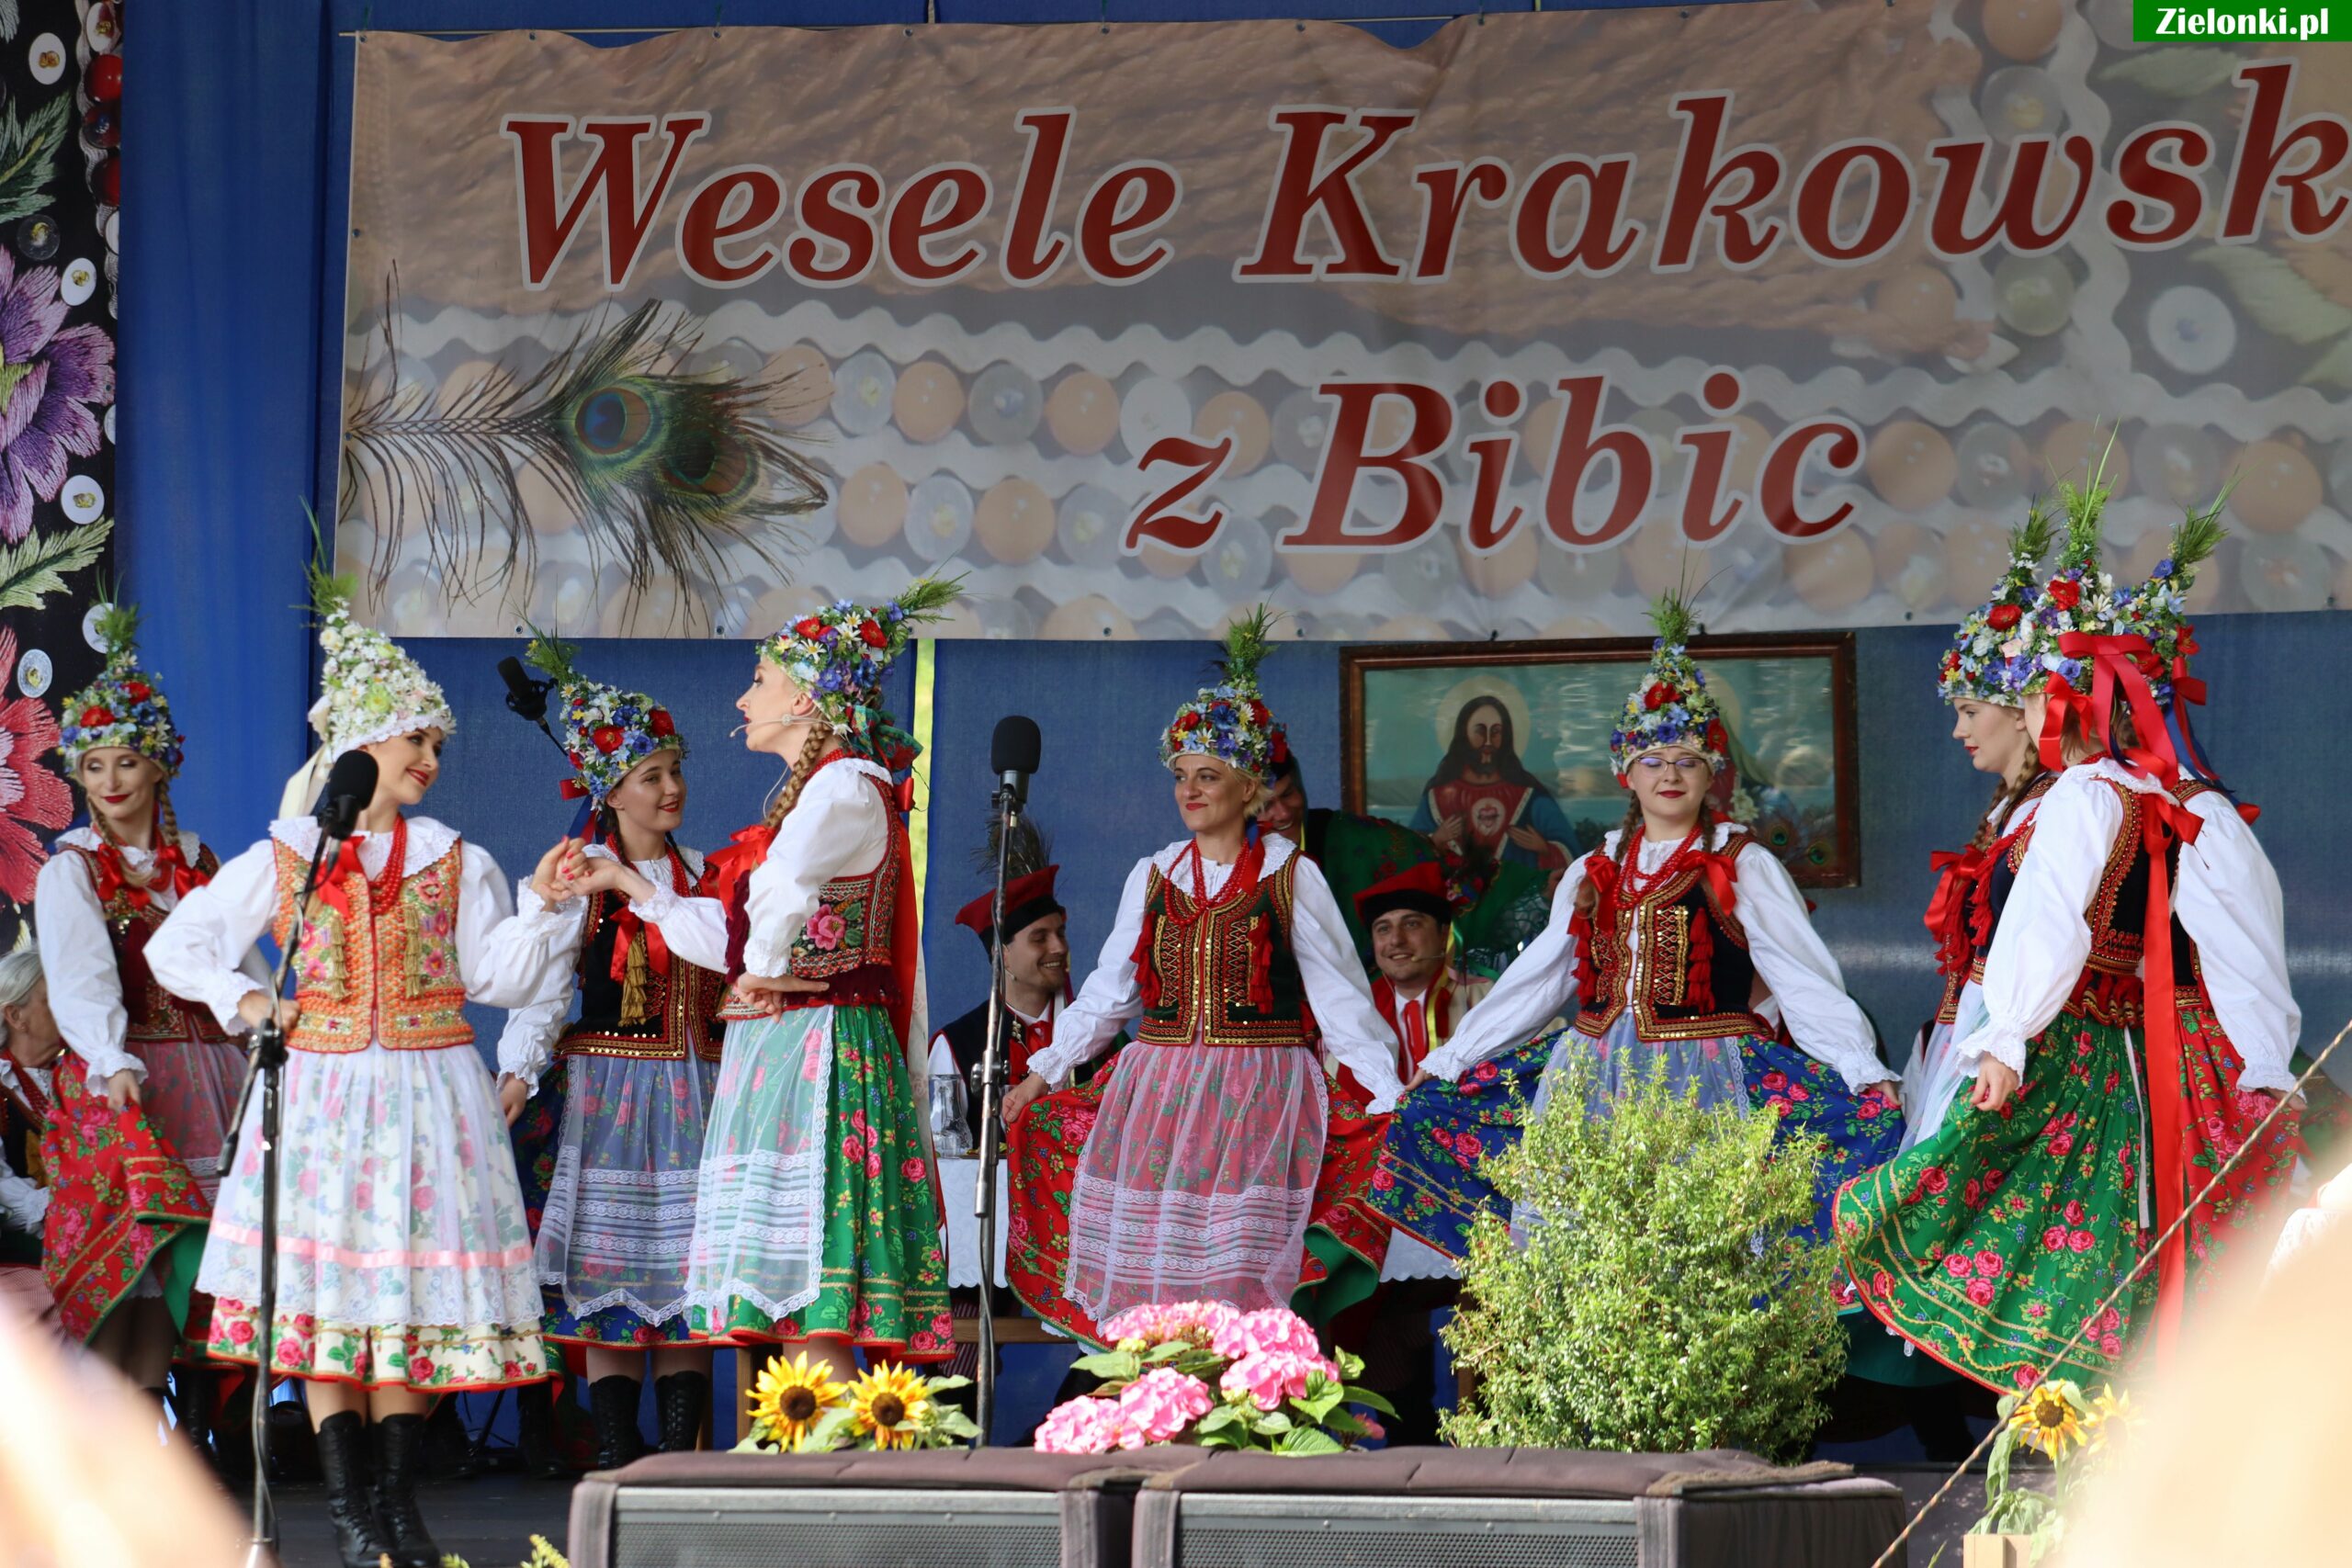 Zdjęcia z Wesela Krakowskiego z Bibic